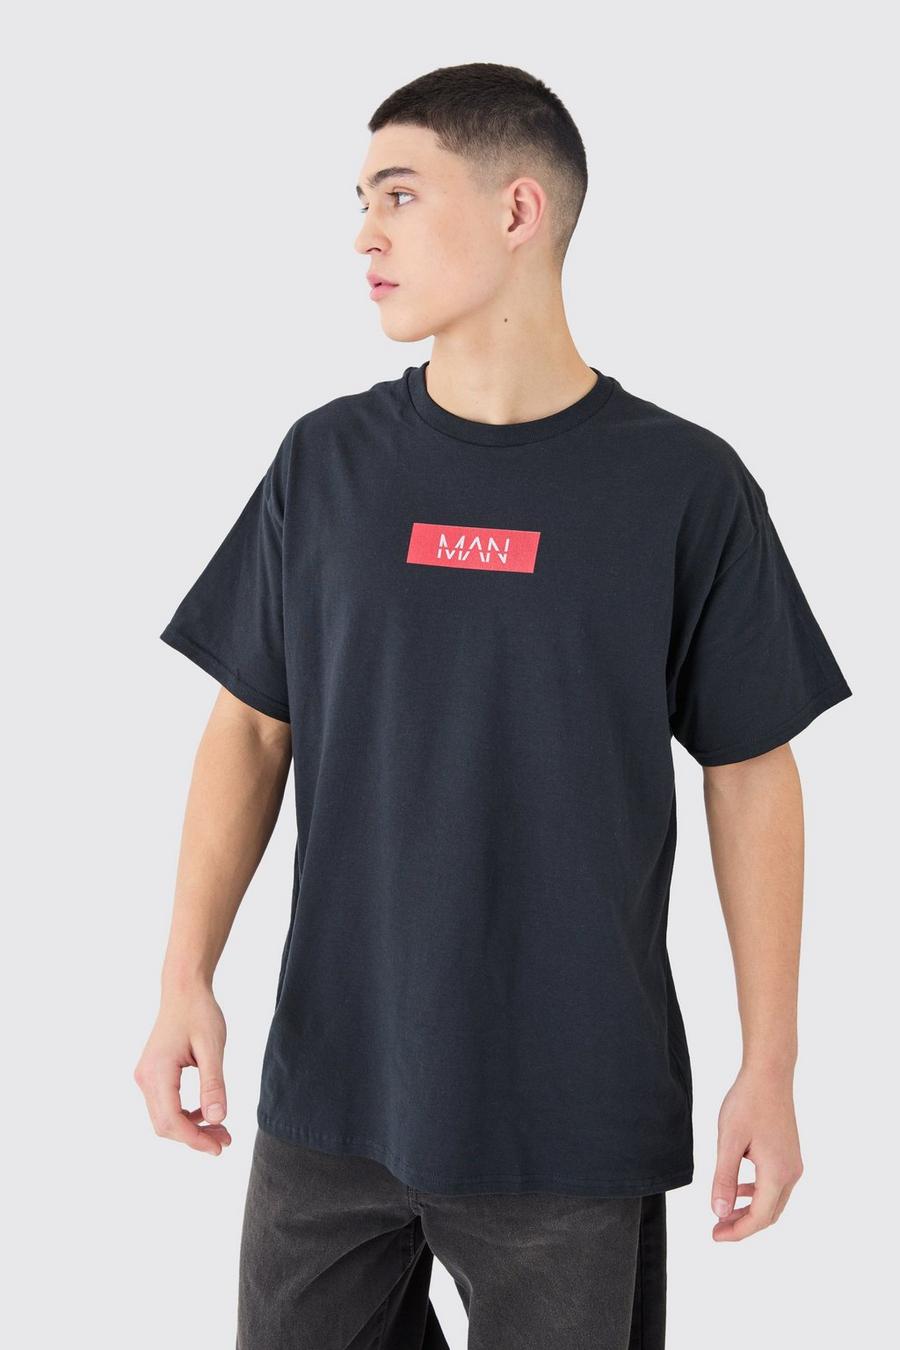 T-Shirt mit Man-Print, Black